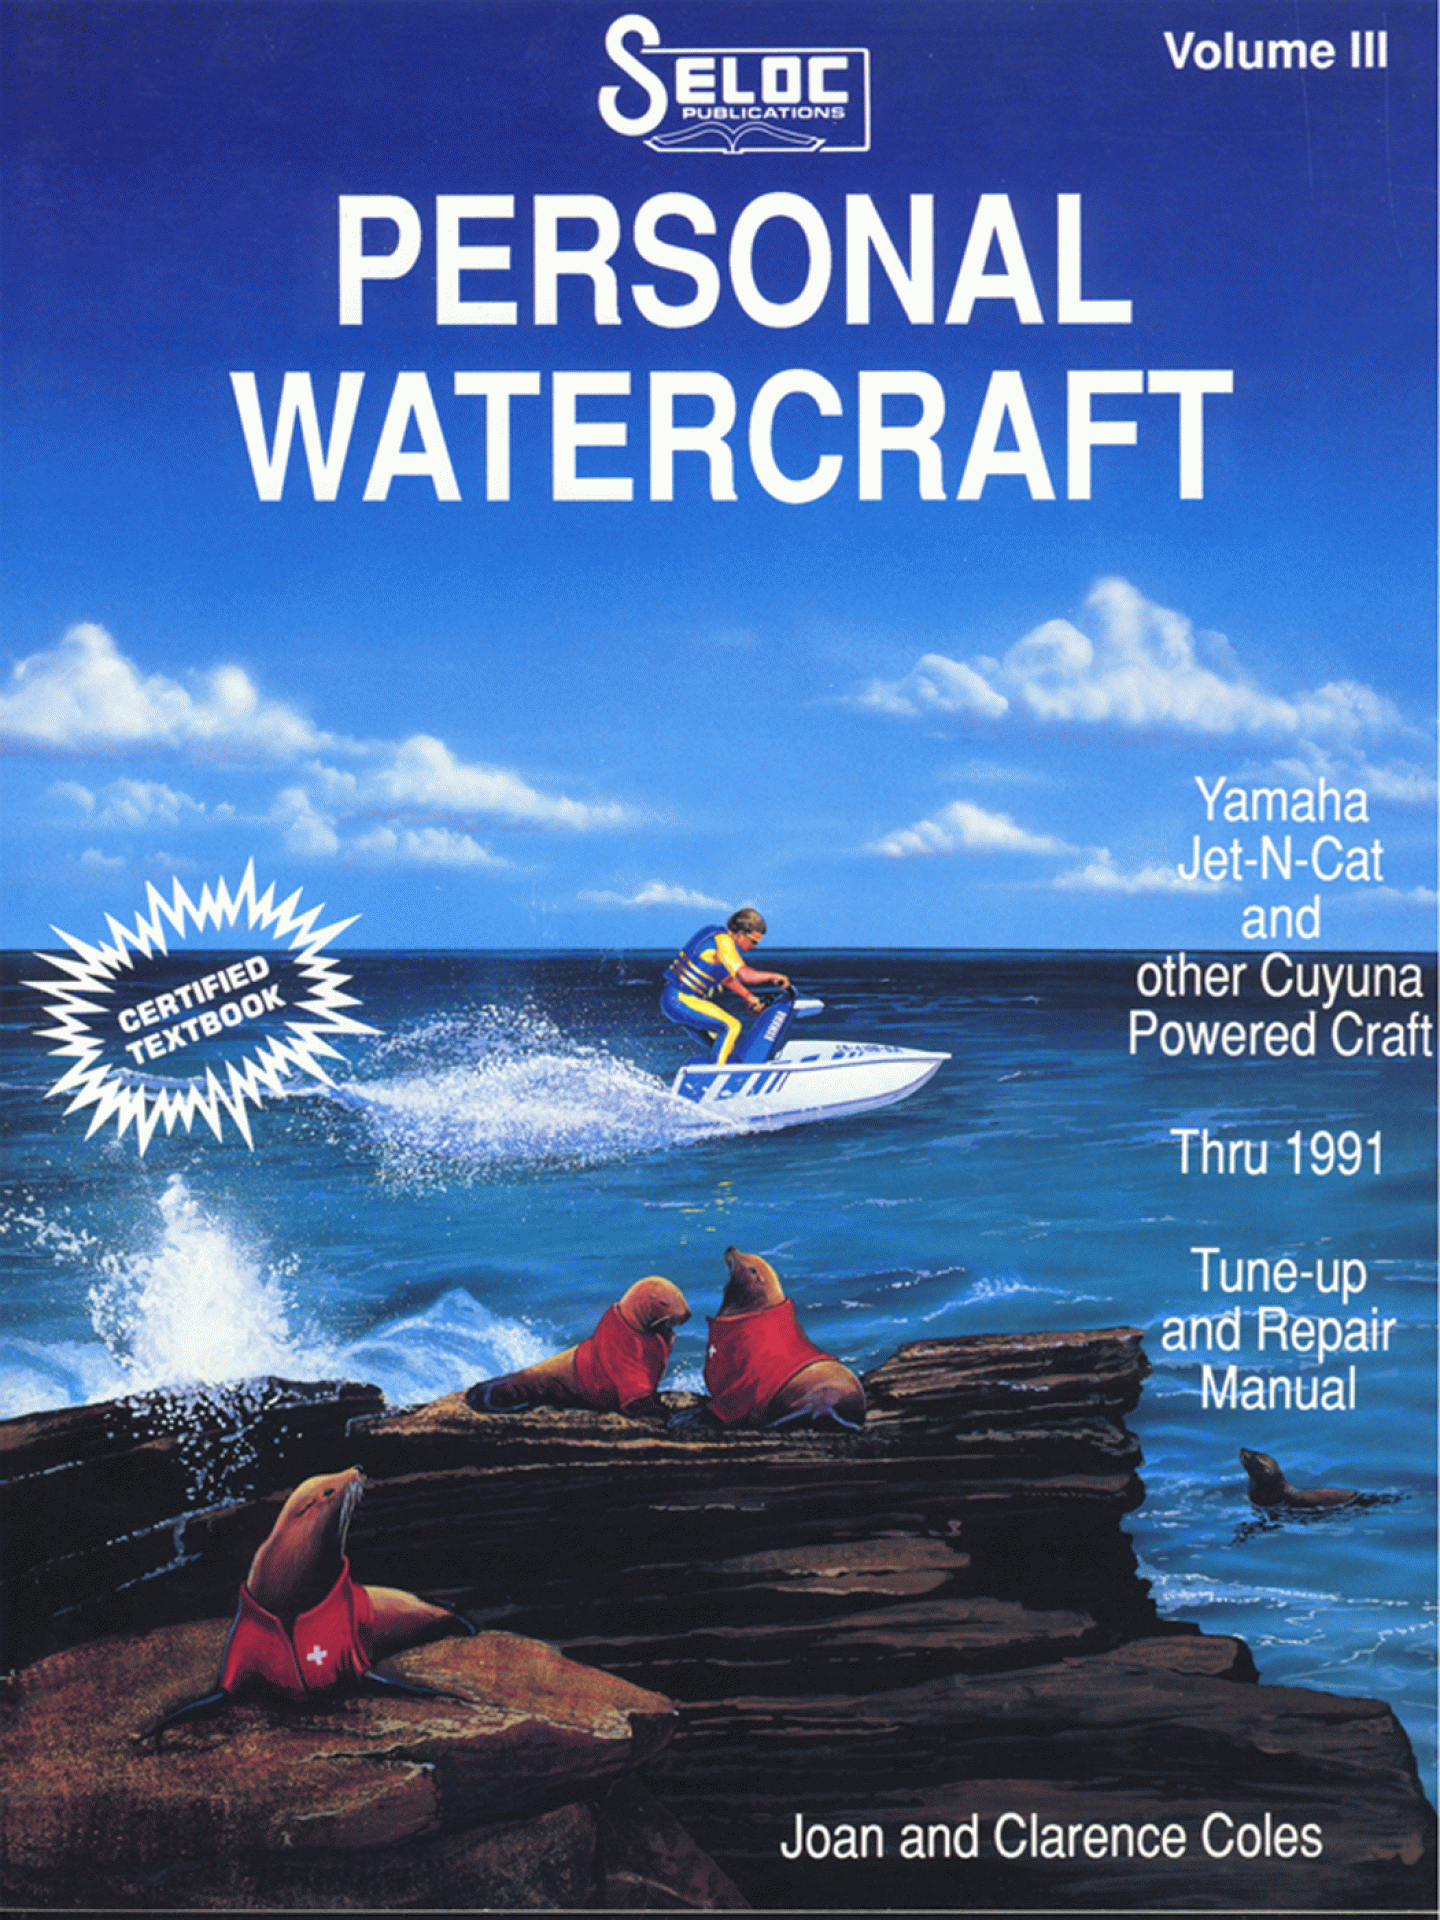 SELOC PUBLISHING | 18-09600 | REPAIR MANUAL Yamaha Personal Watercraft 1987-91